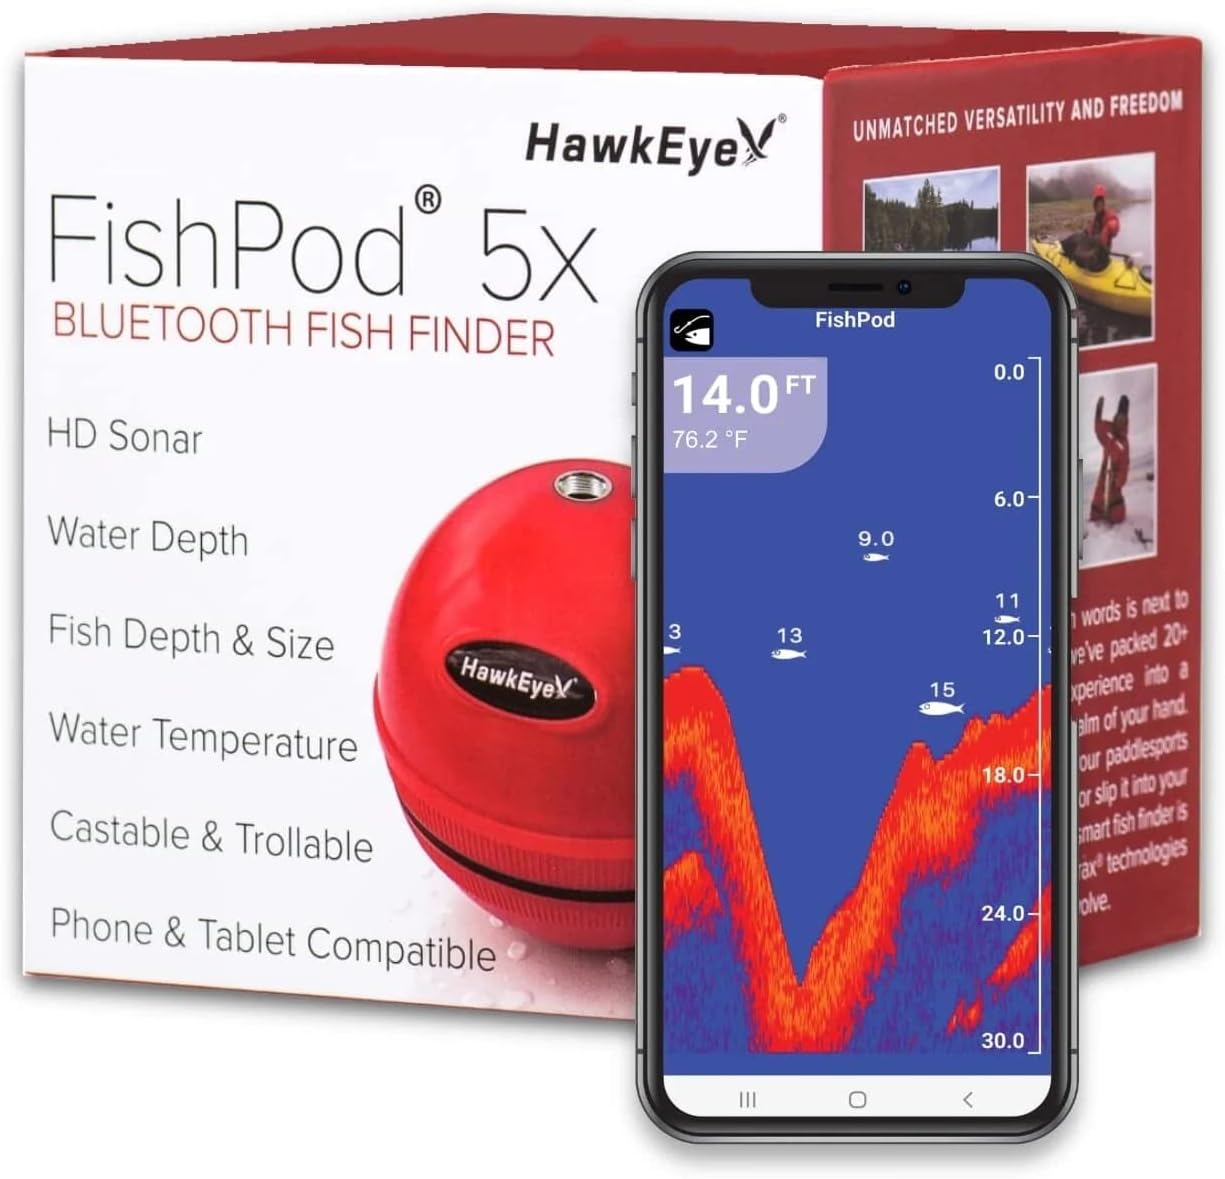 FishPod® 5X Bluetooth Fish Finder